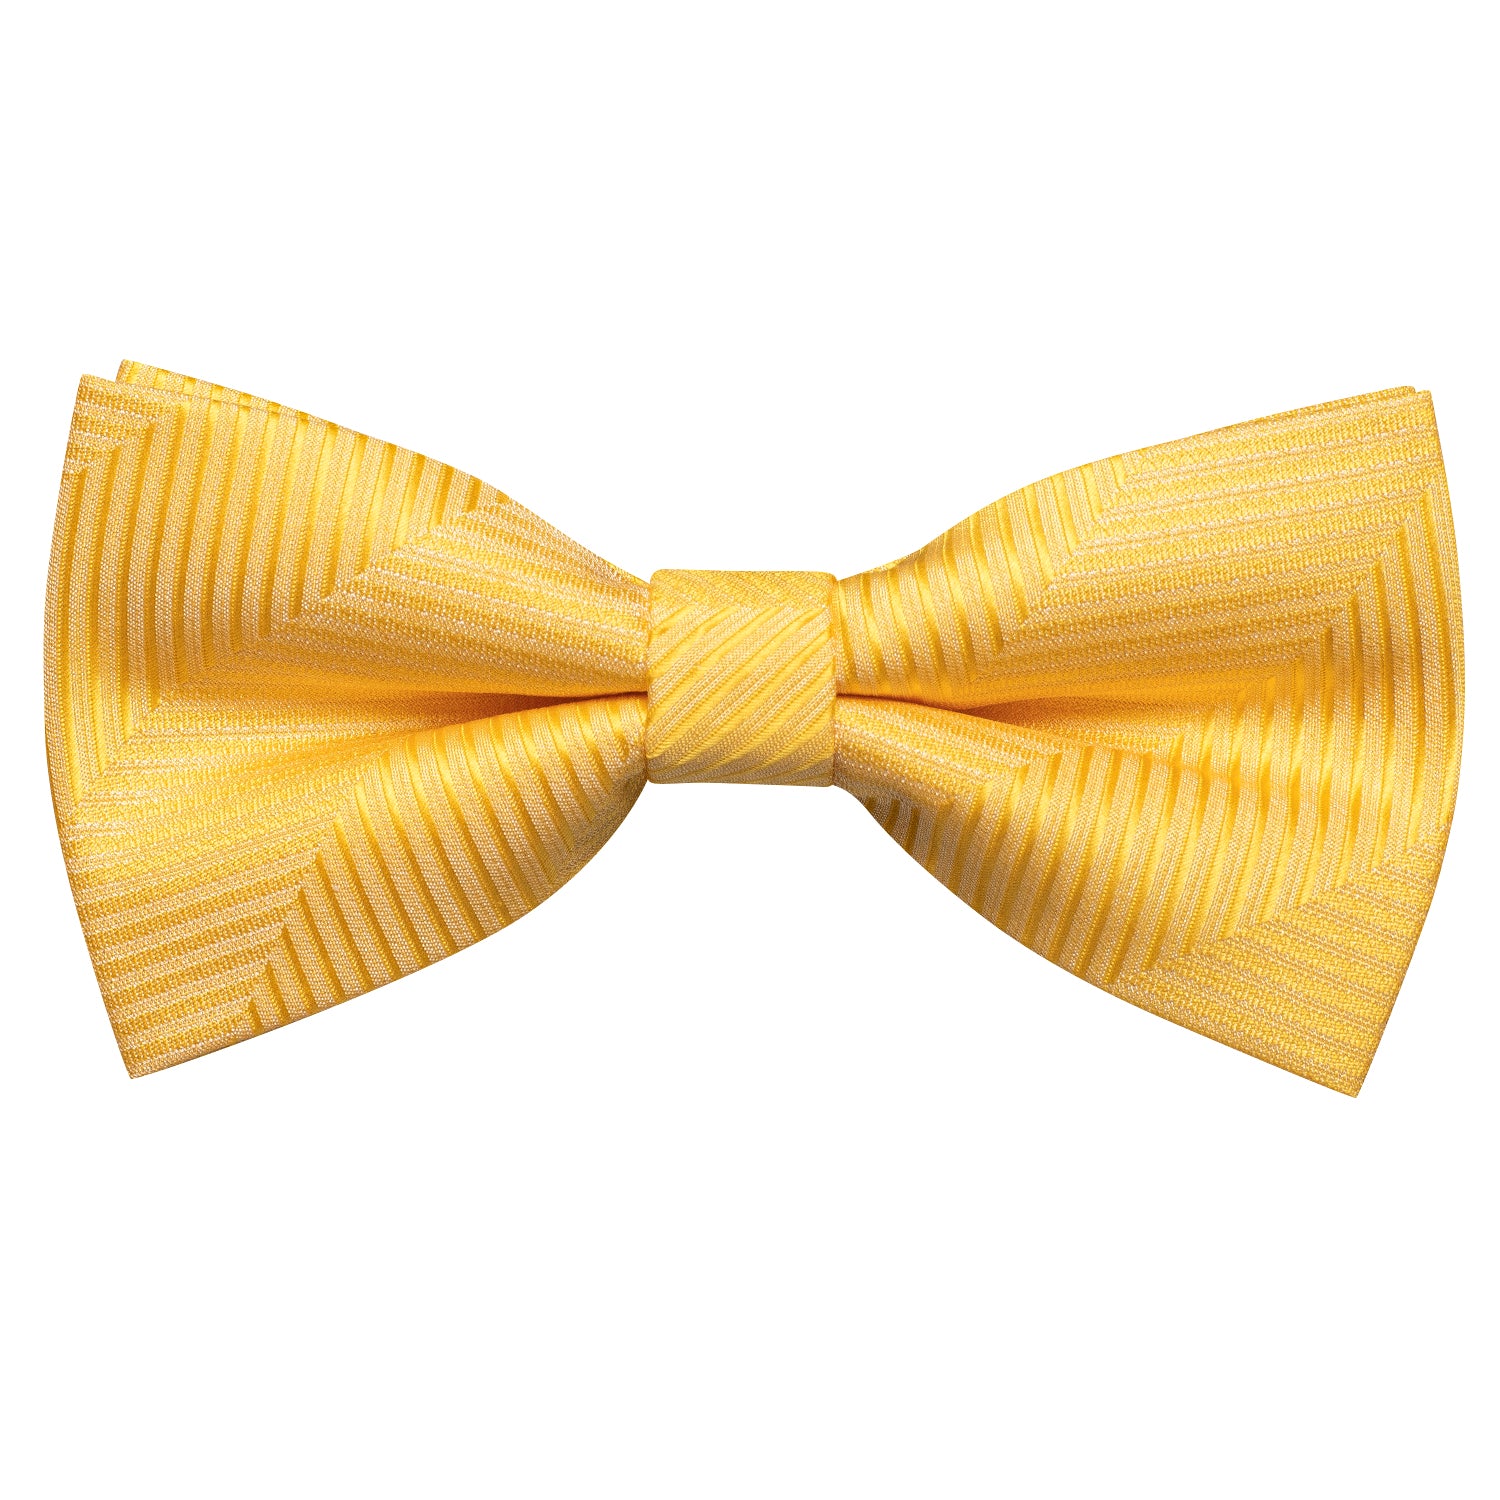 New Yellow Striped Pre-tied Bow Tie Hanky Cufflinks Set